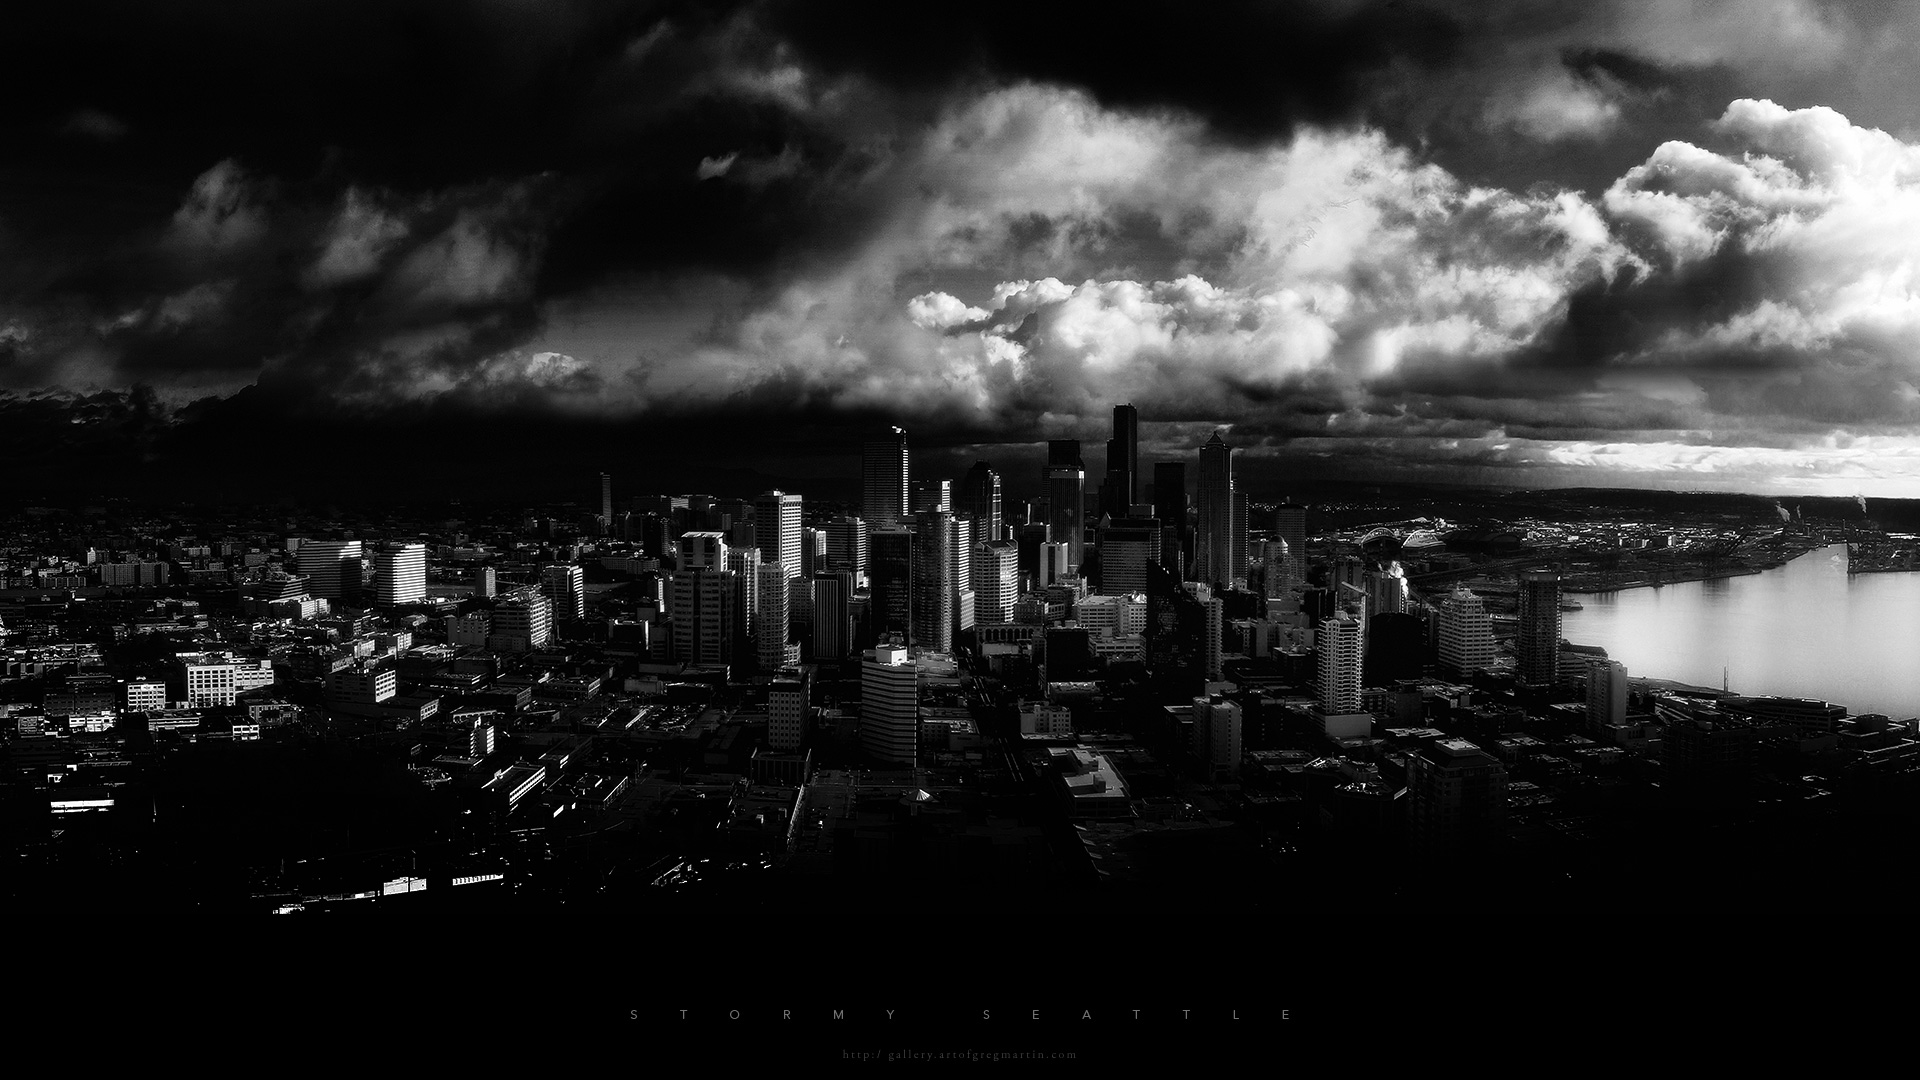 Fond d'ecran Stormy Seattle